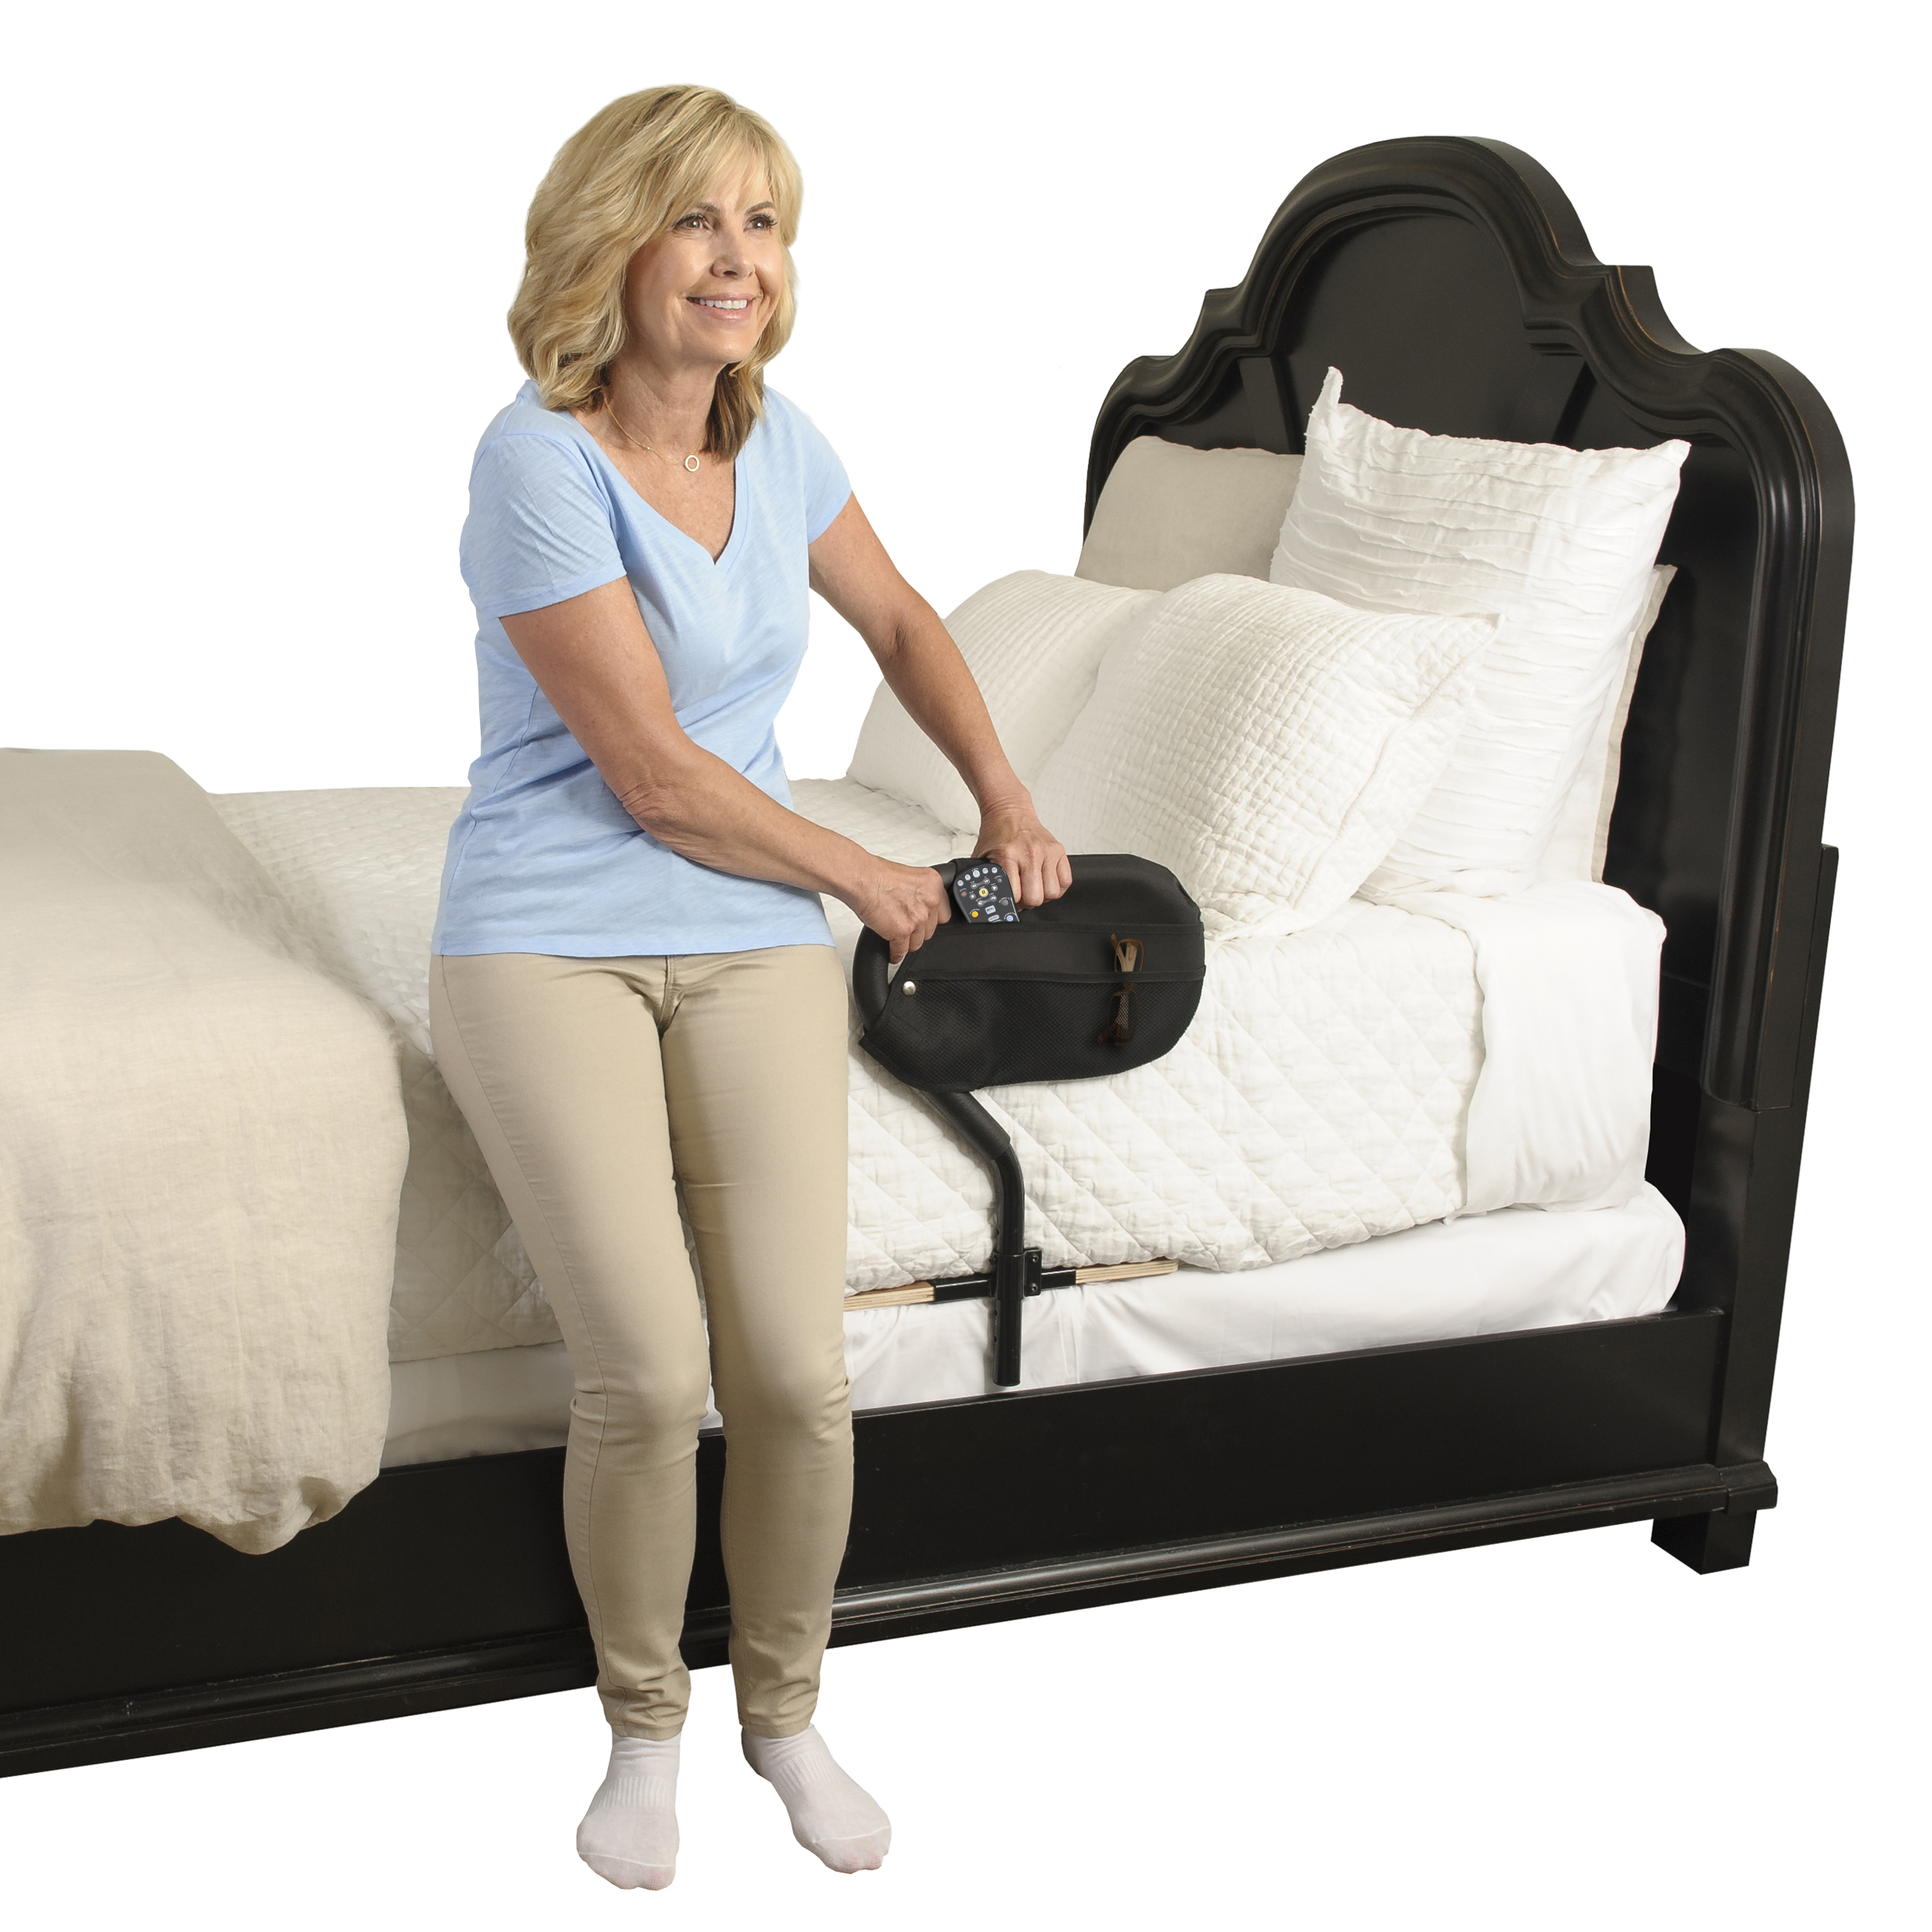 Product Image Standard BedCane - Woman using Cane